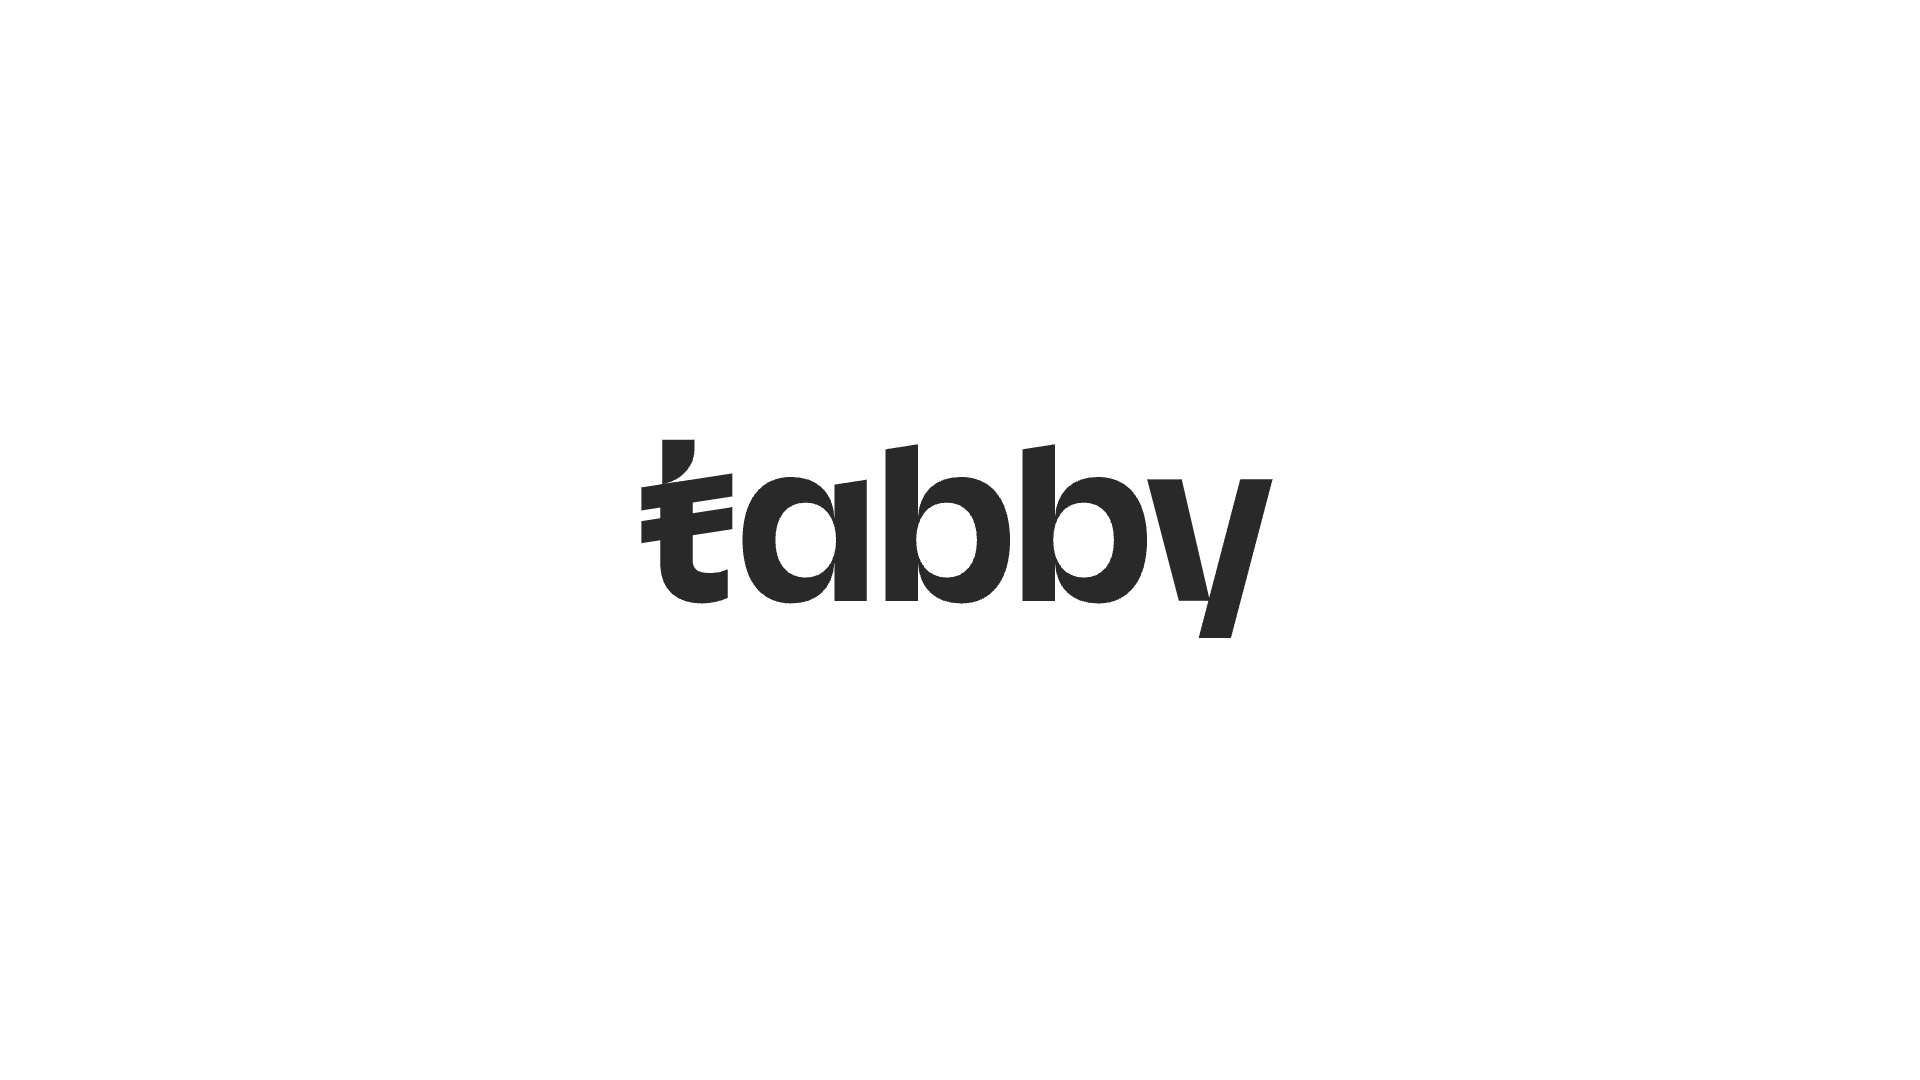 後払いプラットフォームTabby、15億ドルの評価額で2億ドルのシリーズD資金調達を実施